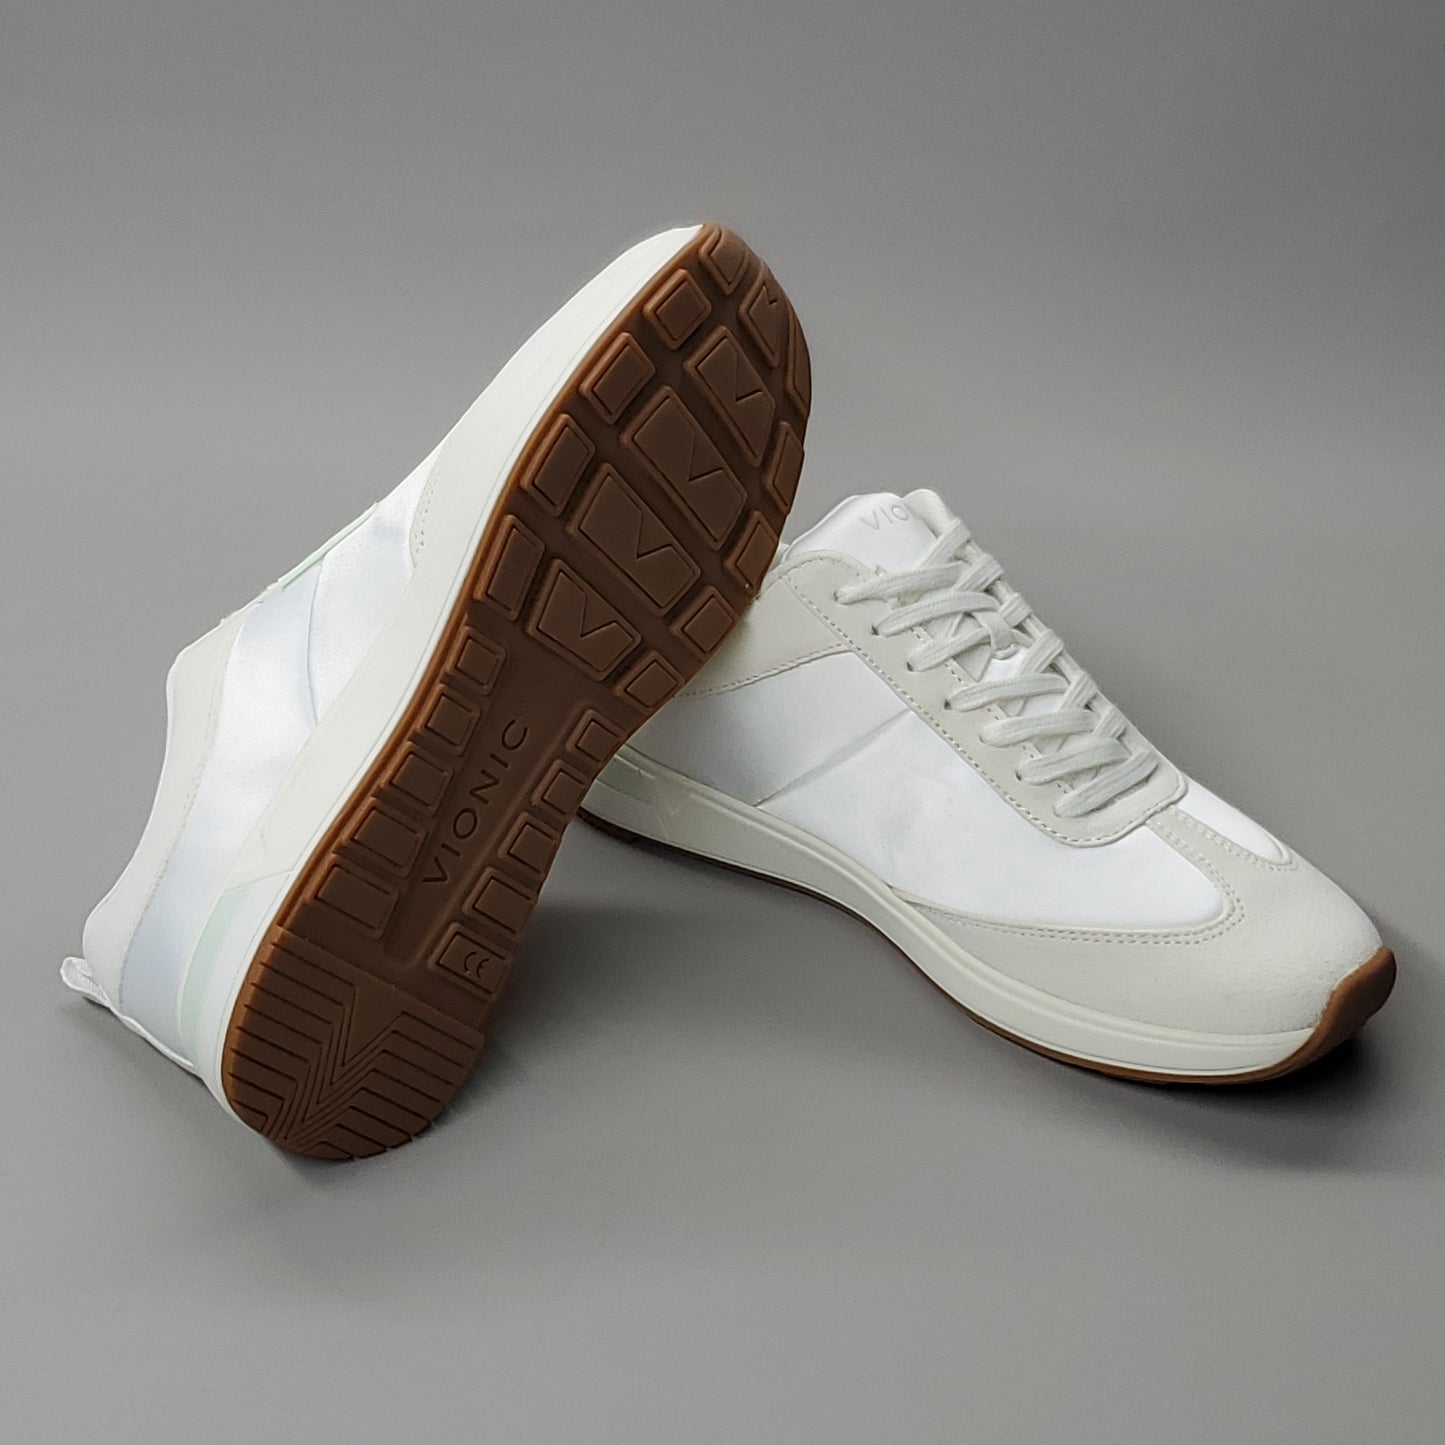 VIONIC Breilyn Satin Sneaker Shoe Women's Sz 9 M Beige/White H7707M4251 (New)